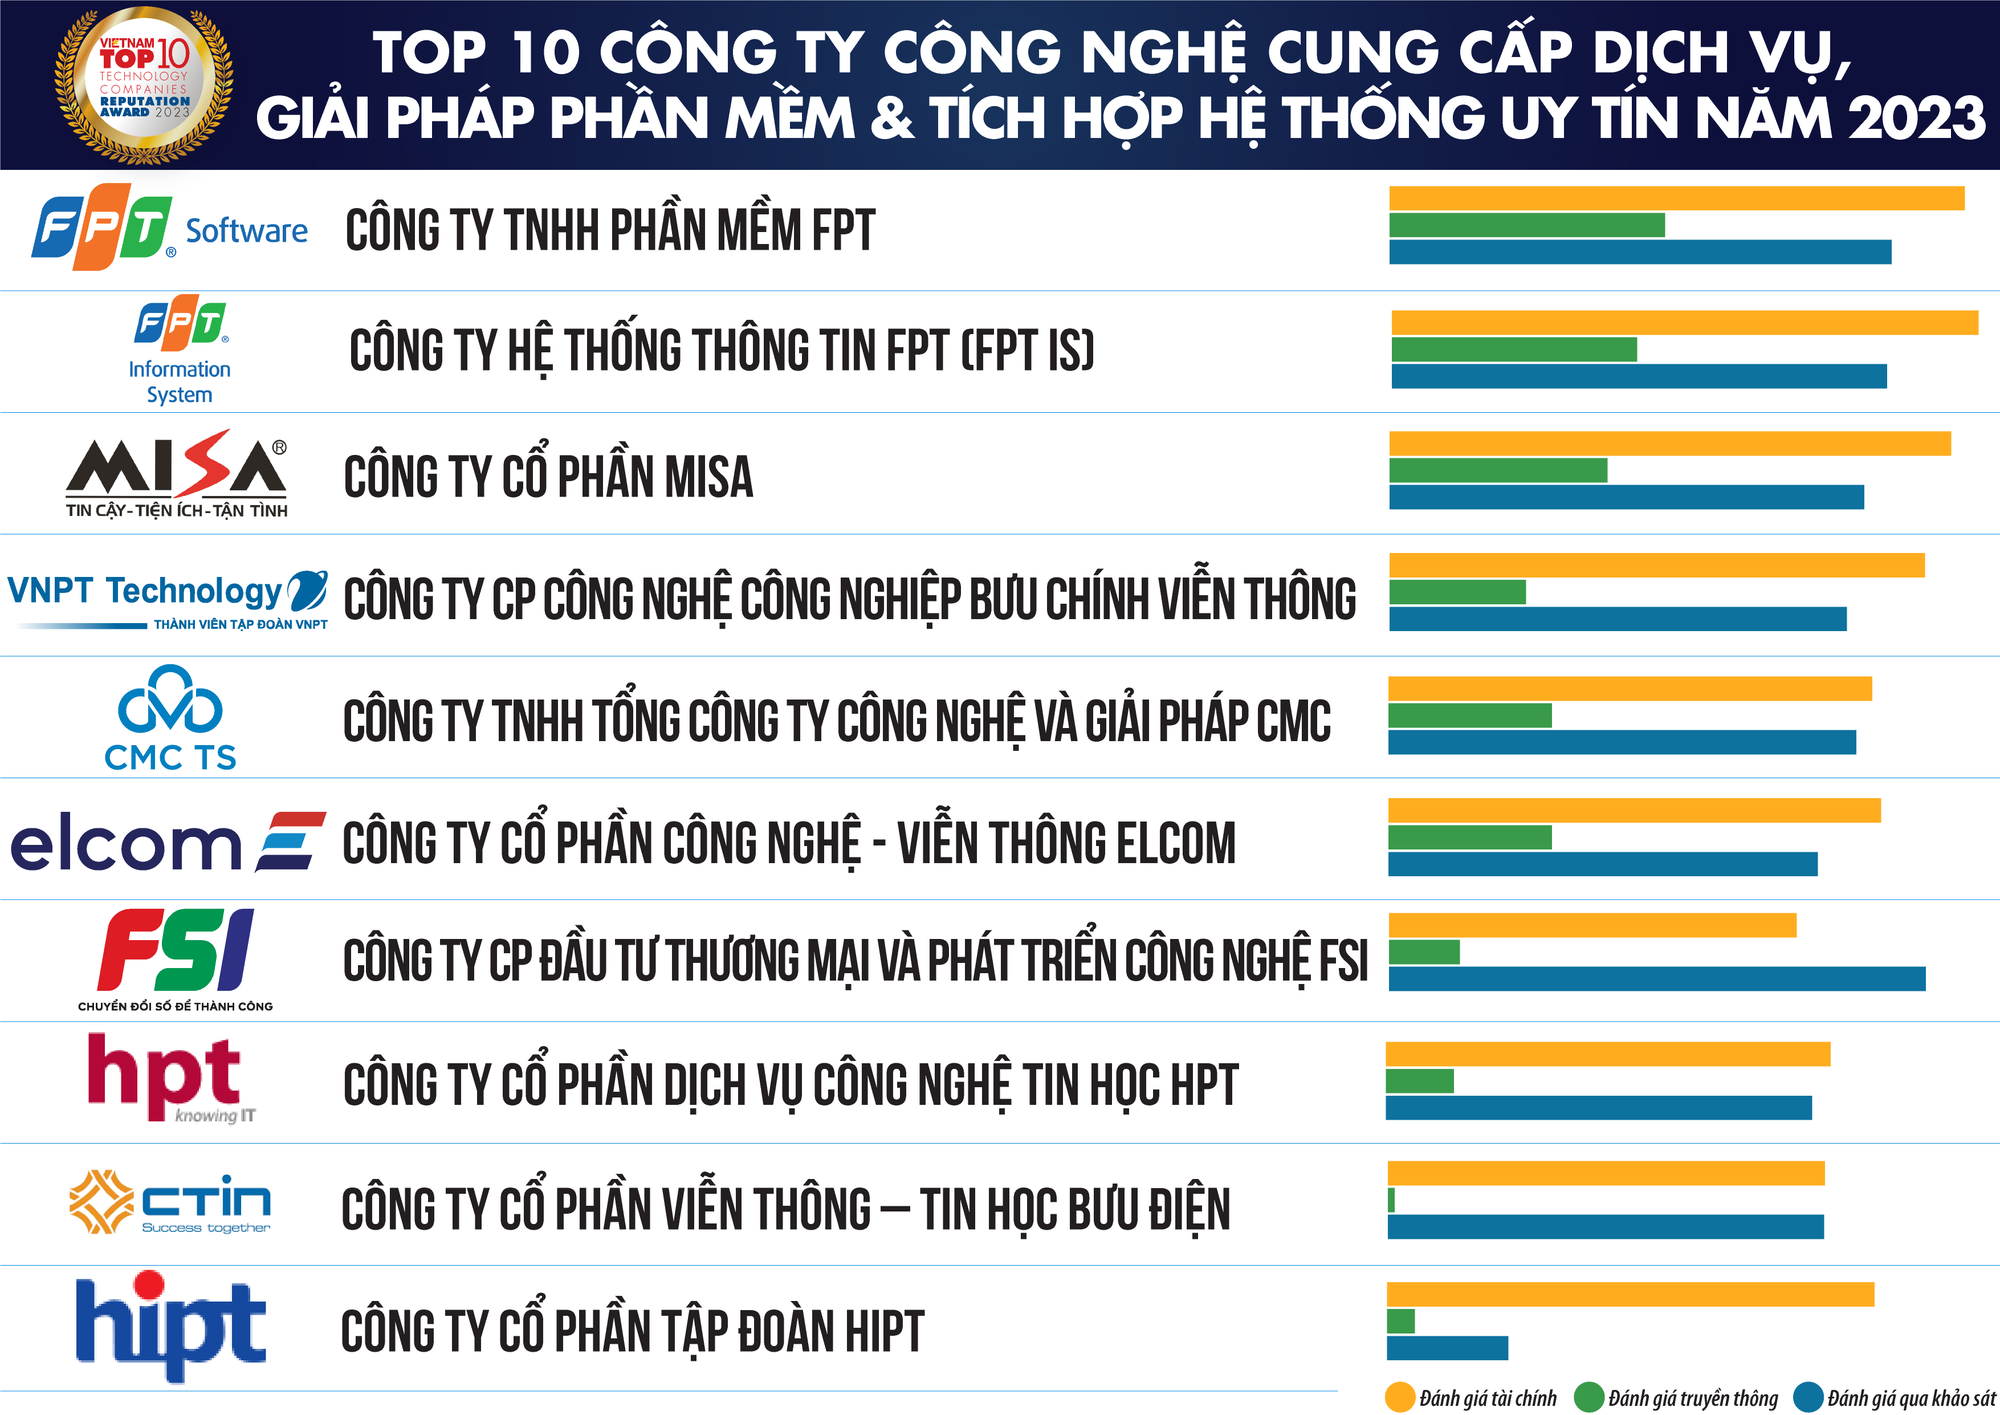 Viettel dẫn đầu Top 10 công ty công nghệ uy tín nhất Việt Nam năm 2023 - Ảnh 2.